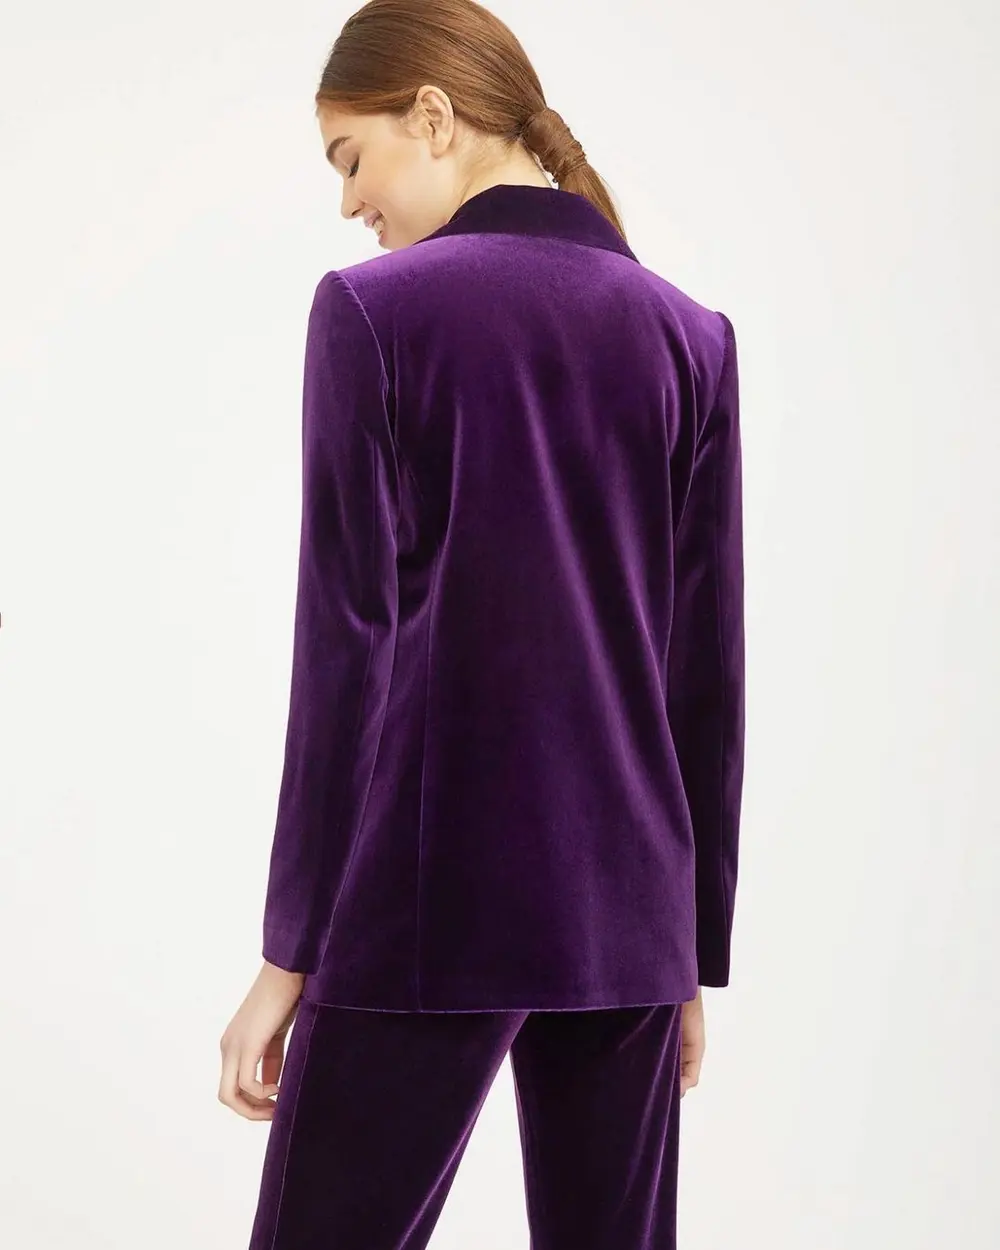 How to wear a purple velvet blazer